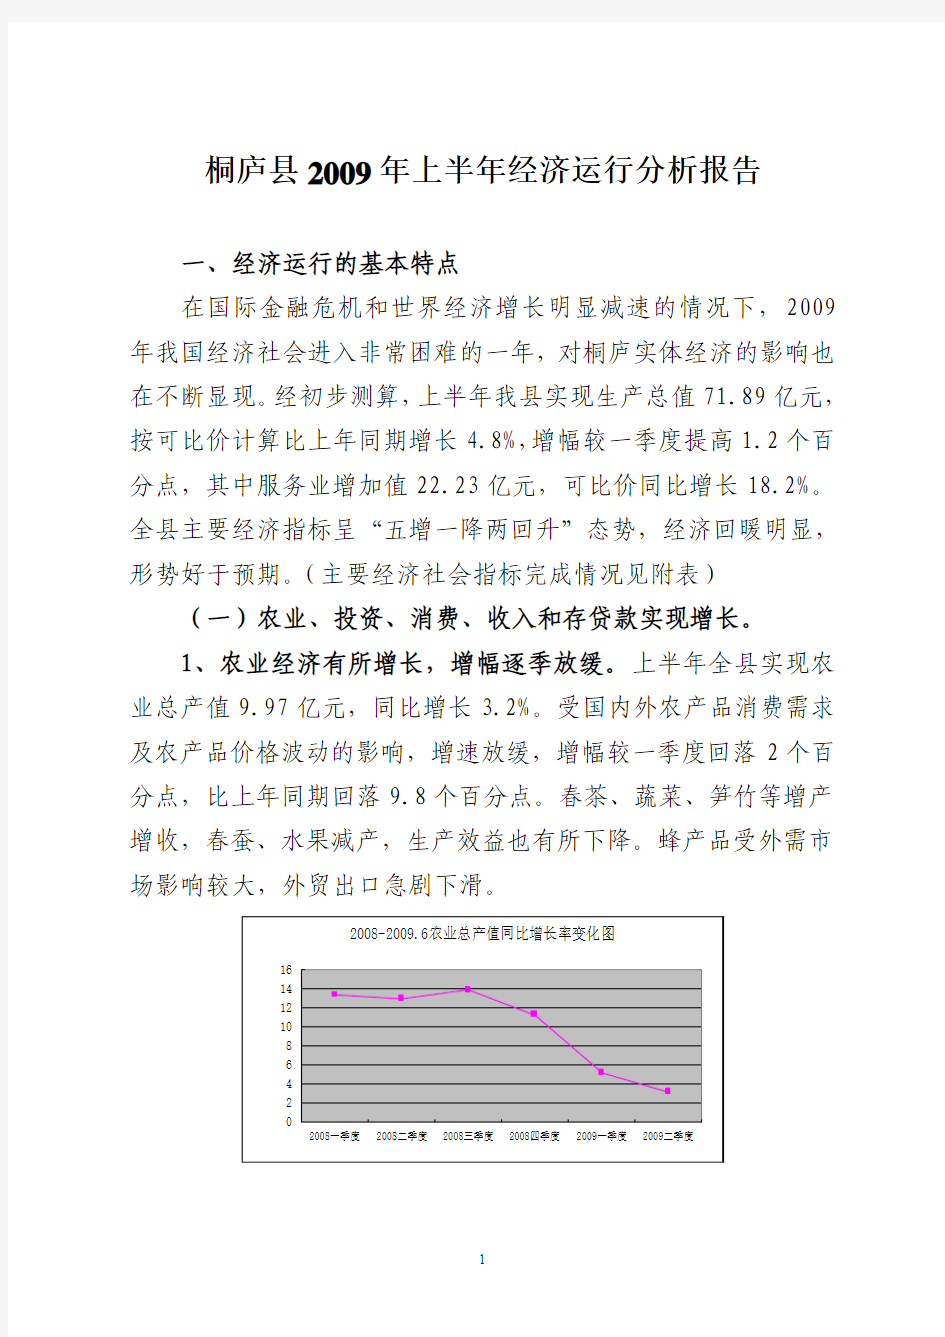 桐庐县2009年上半年经济运行分析报告